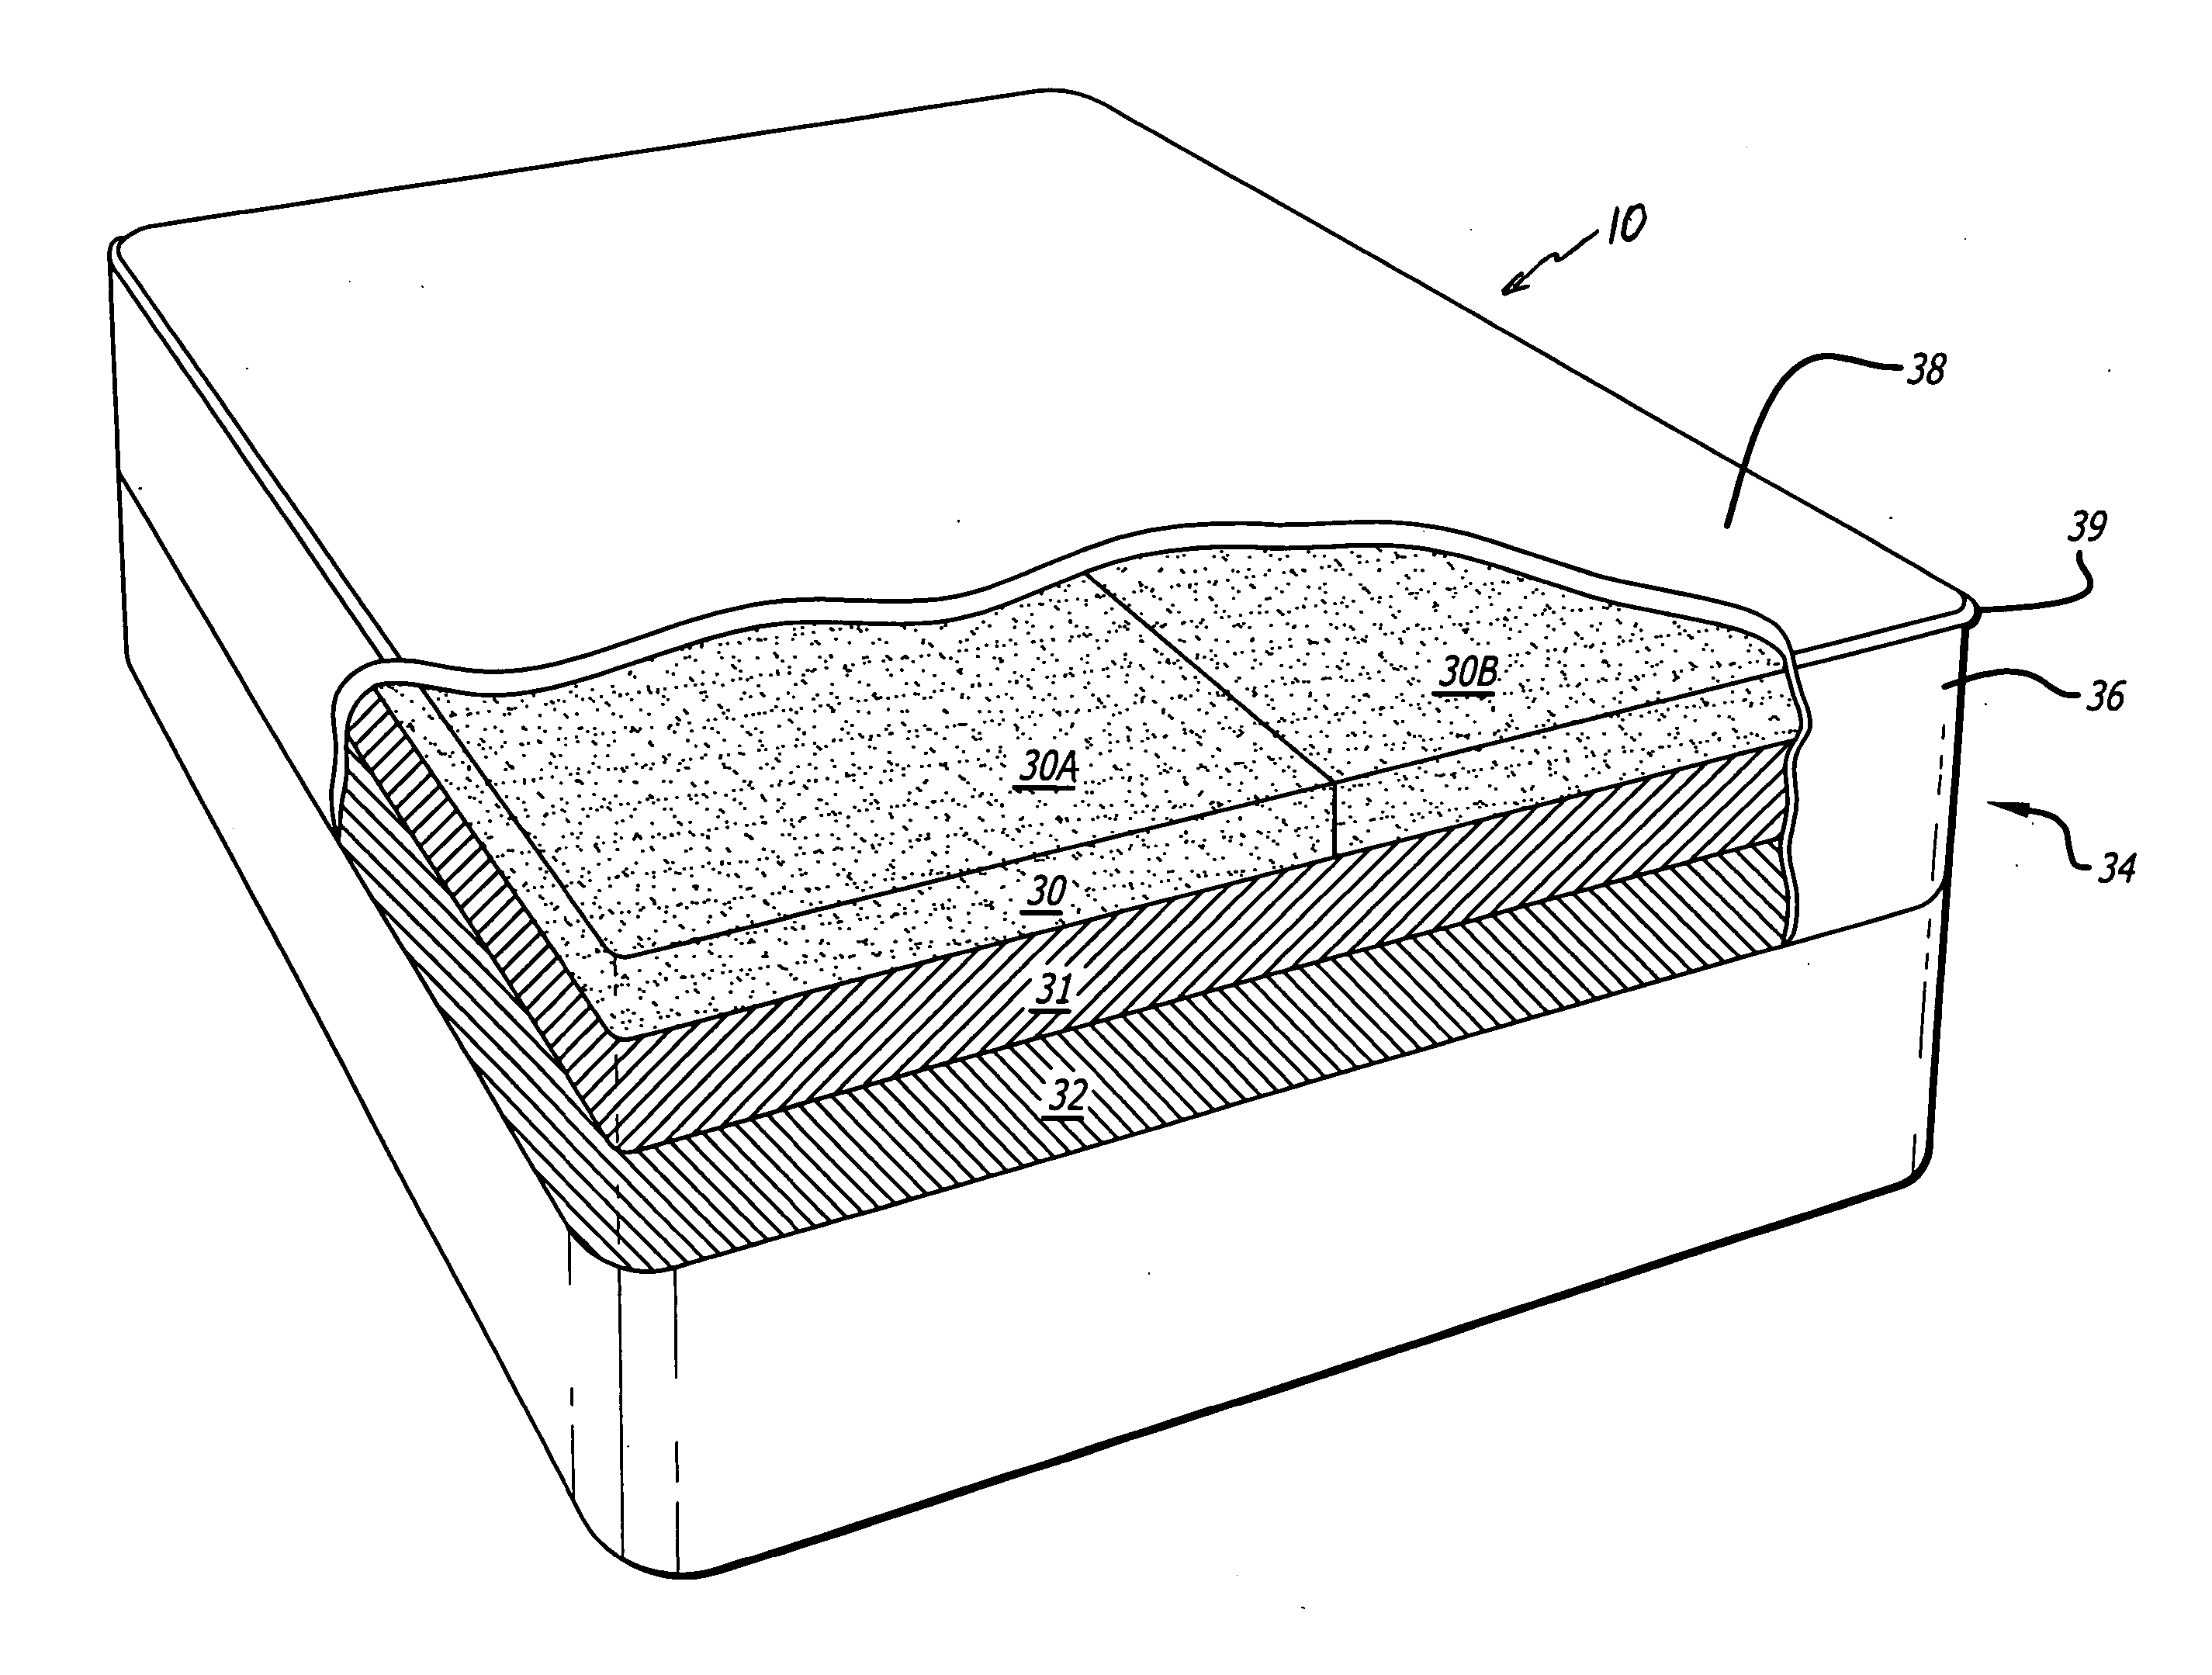 Composite foam mattress assembly